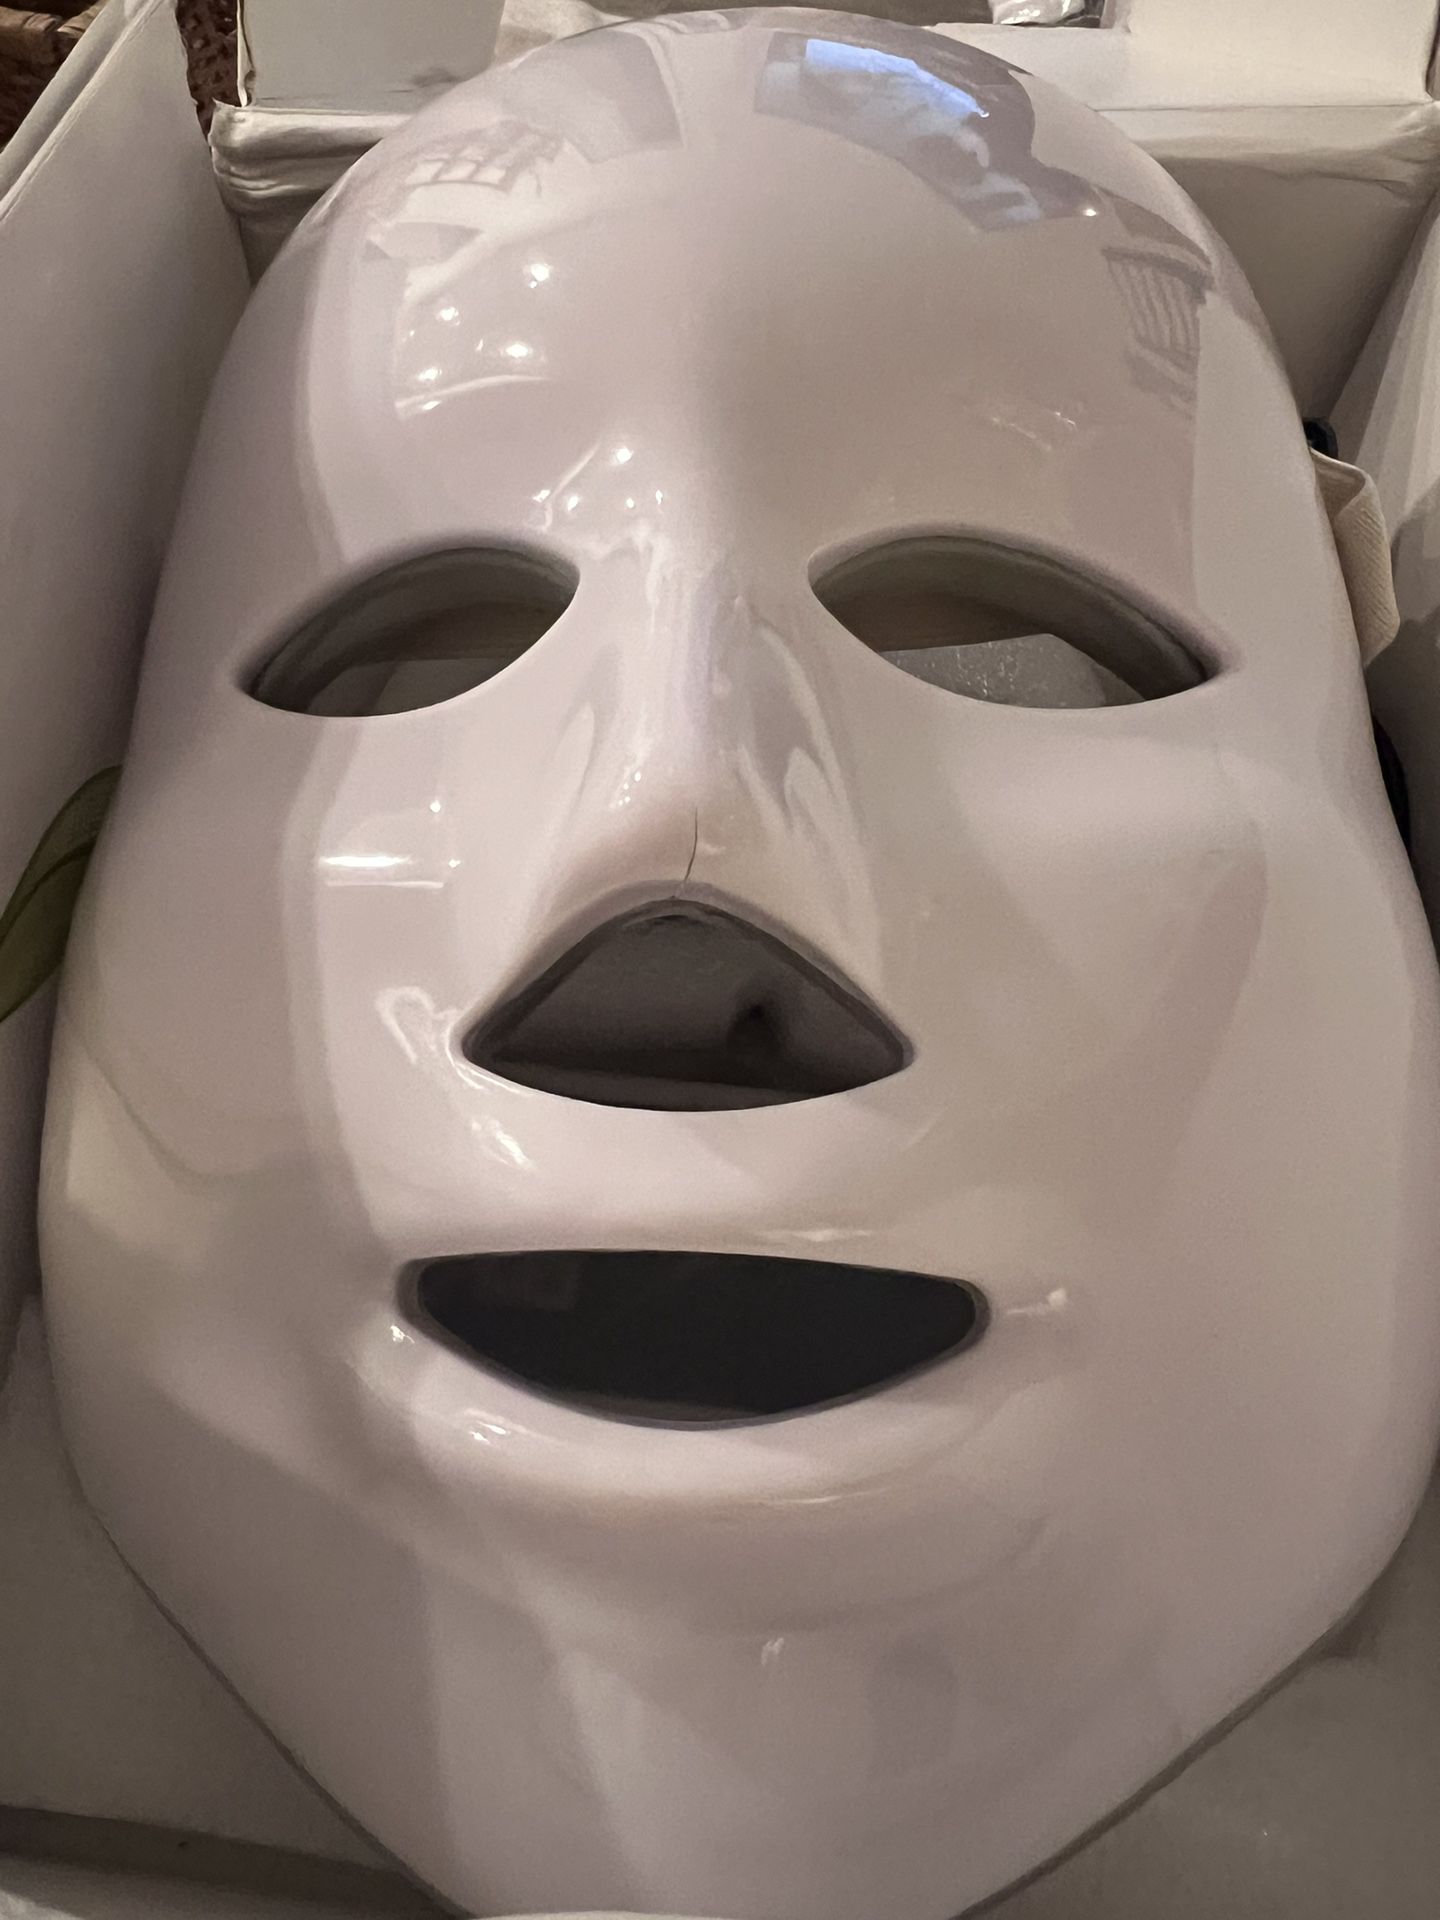 LED Face mask